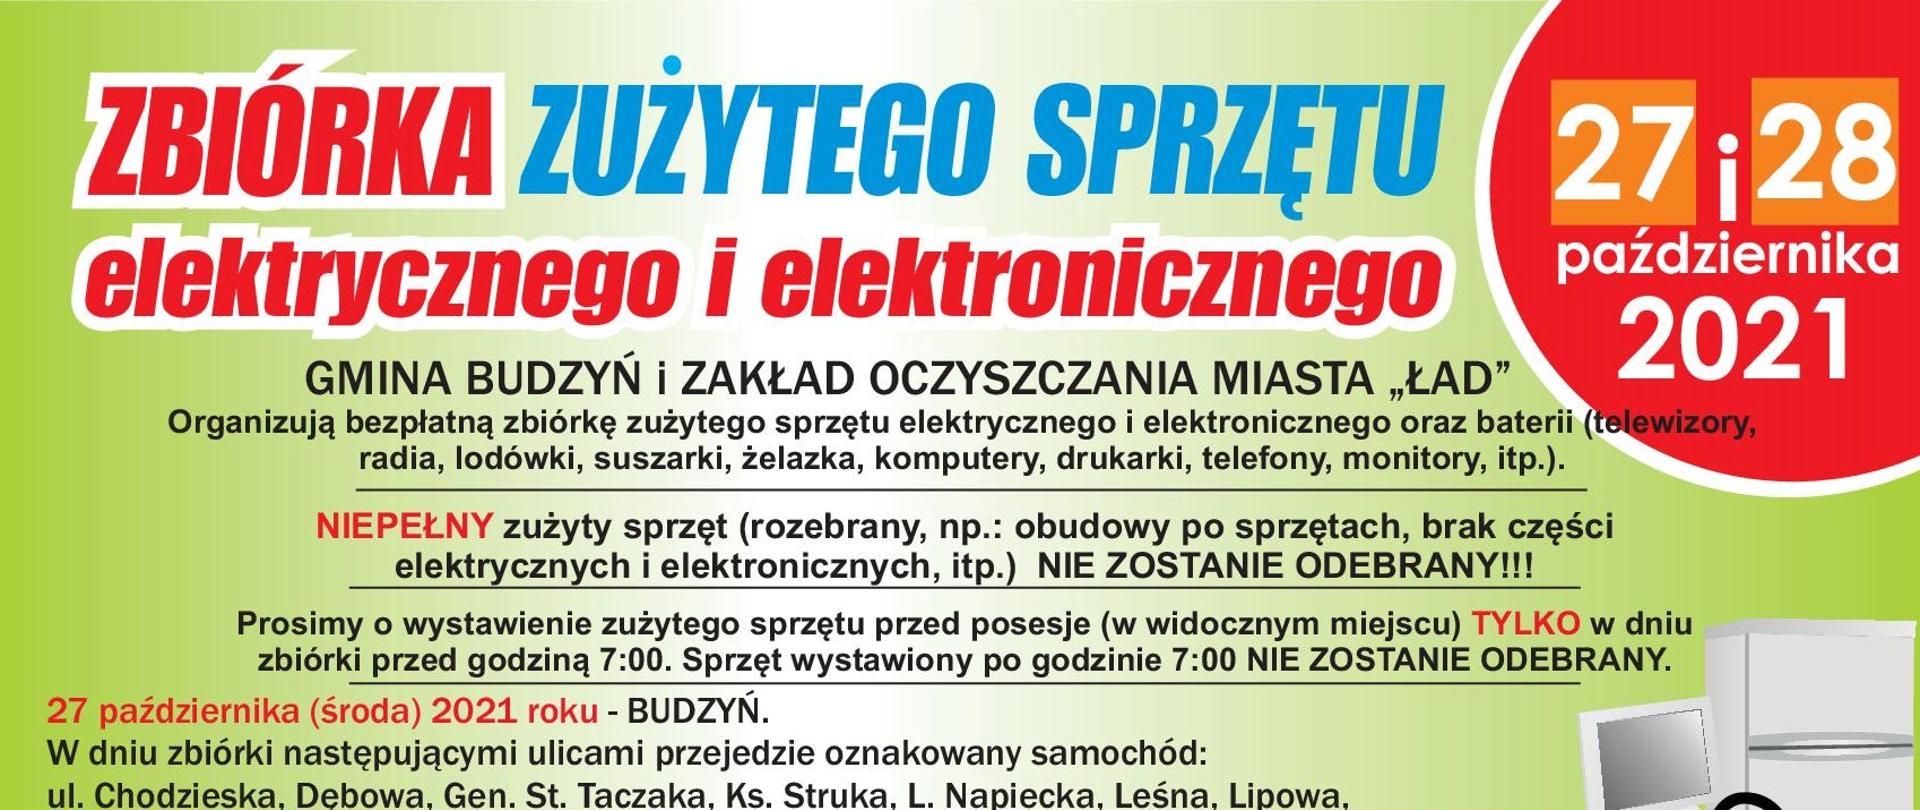 Ulotka informująca o zbiórce zużytego sprzętu elektrycznego i elektronicznego w Budzyniu w dniach 27 i 28 października 2021 roku